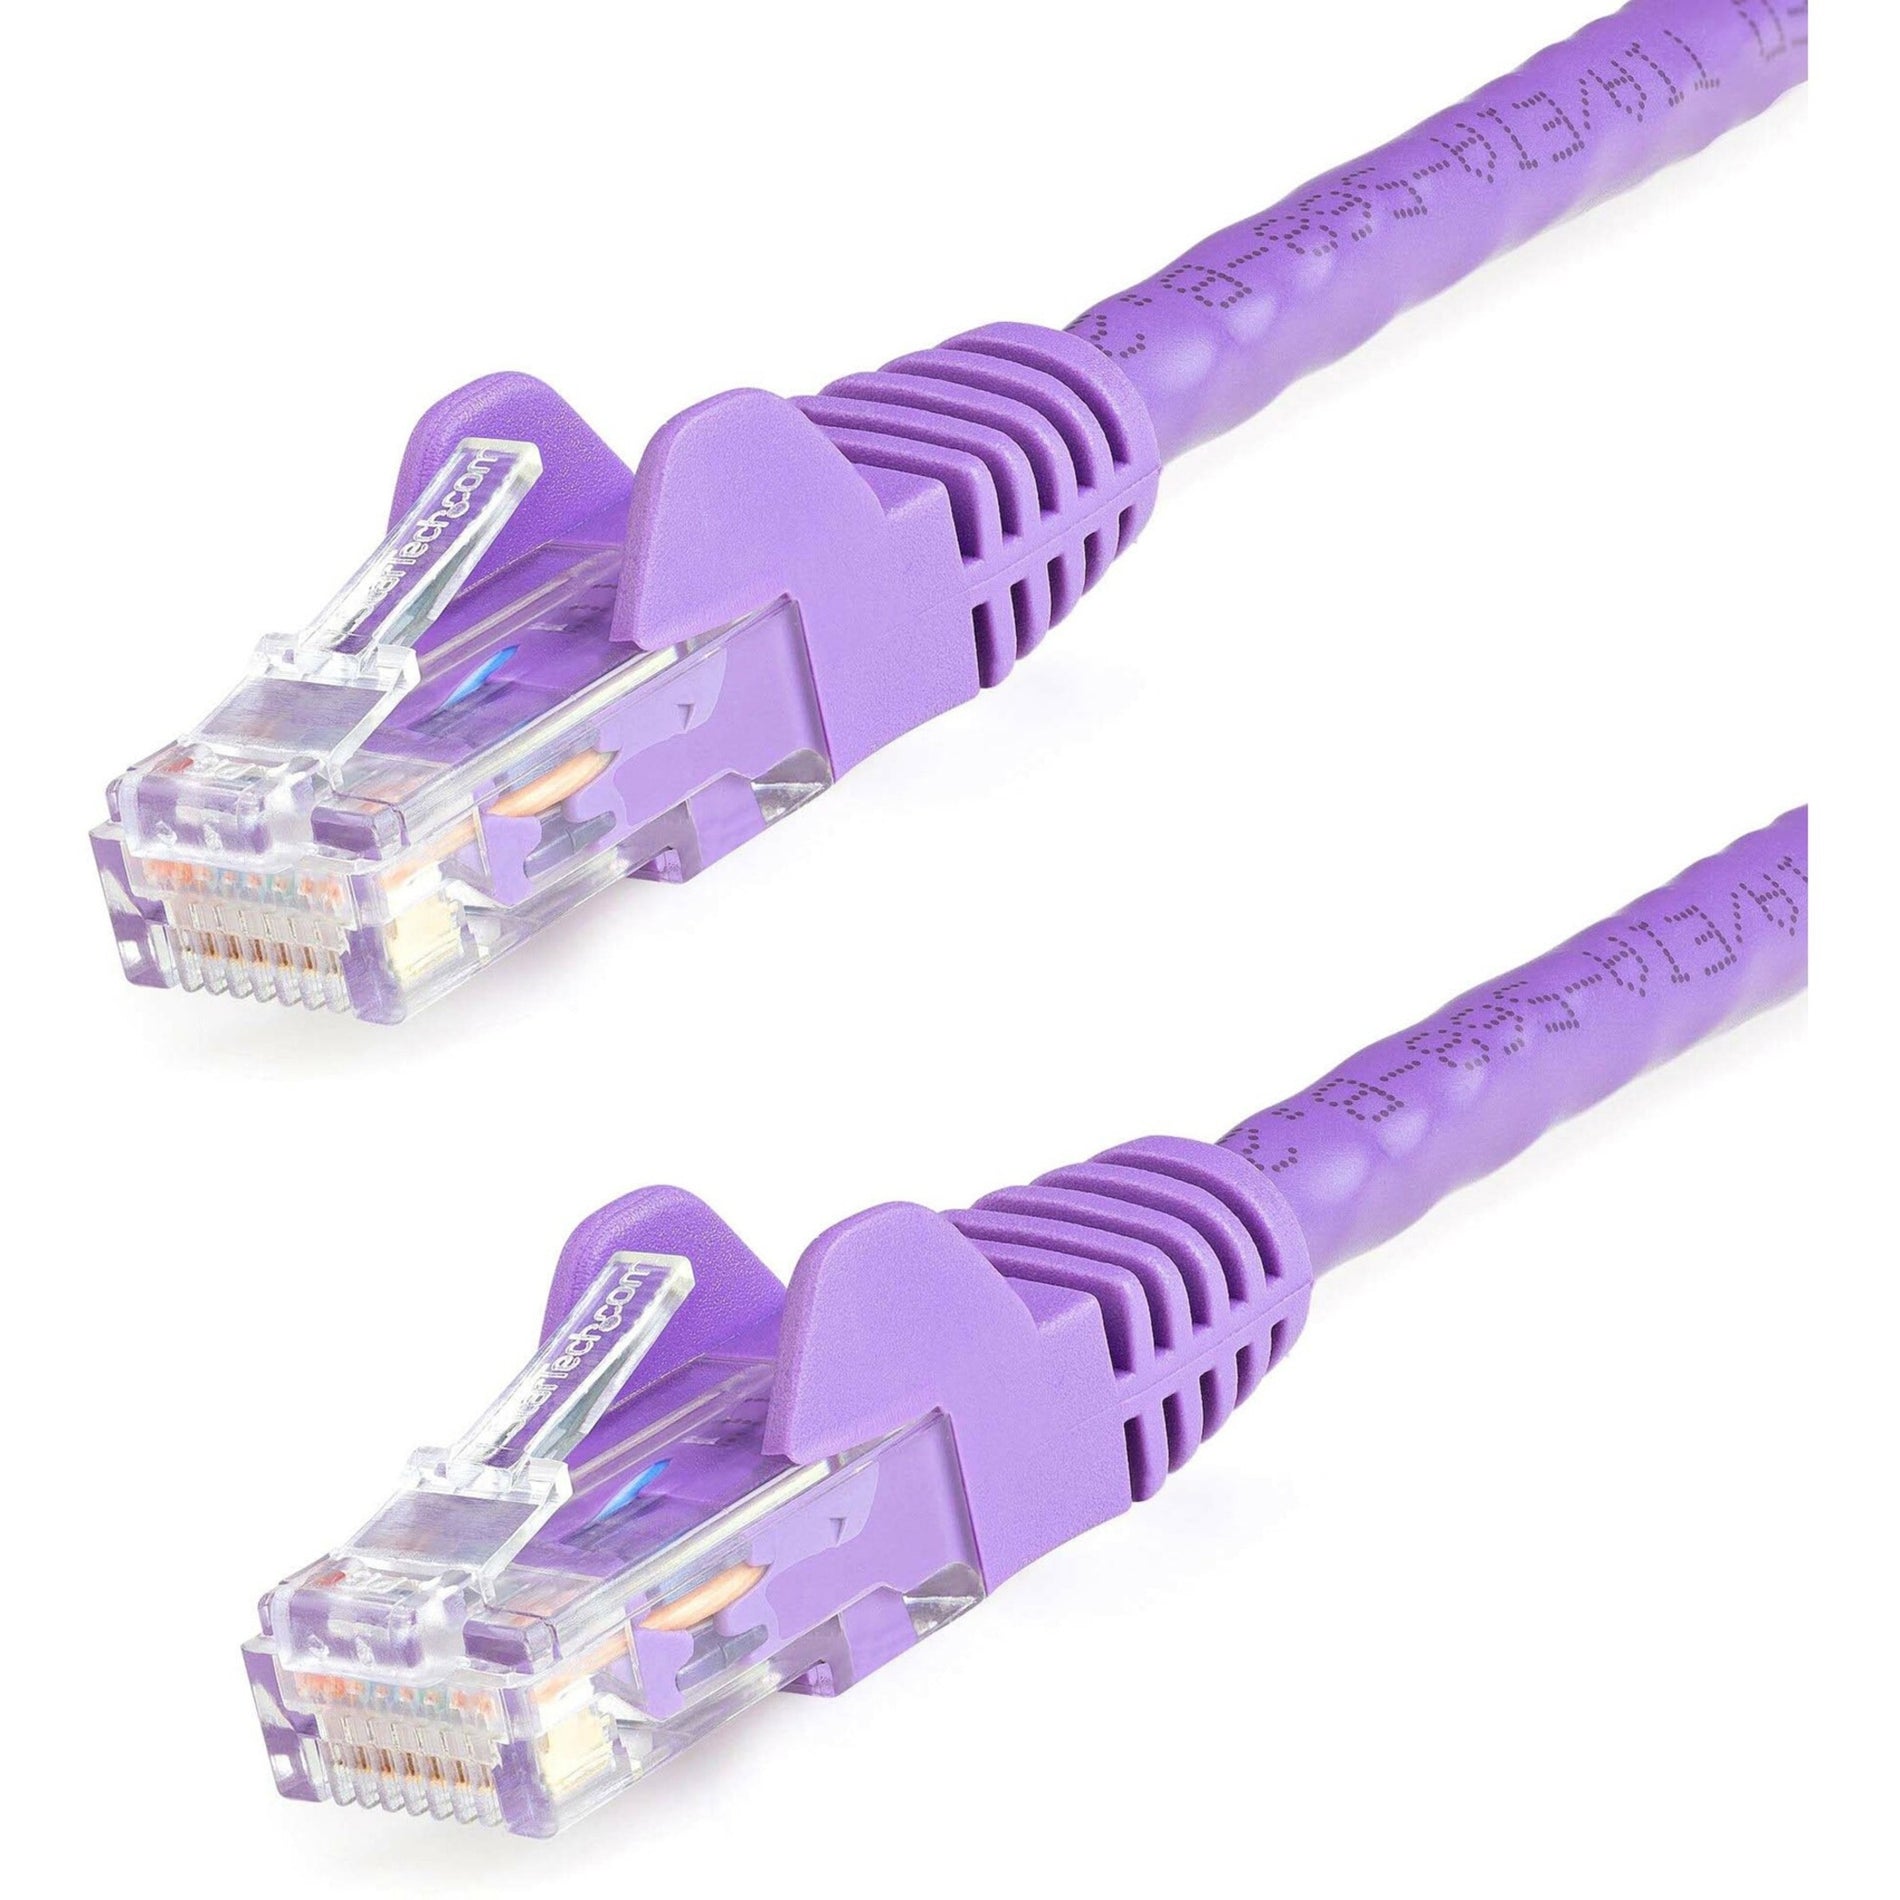 StarTech.com N6PATCH1PL Cat.6 Patch Network Cable, 1ft Purple Ethernet Cable, Snagless RJ45 Connectors